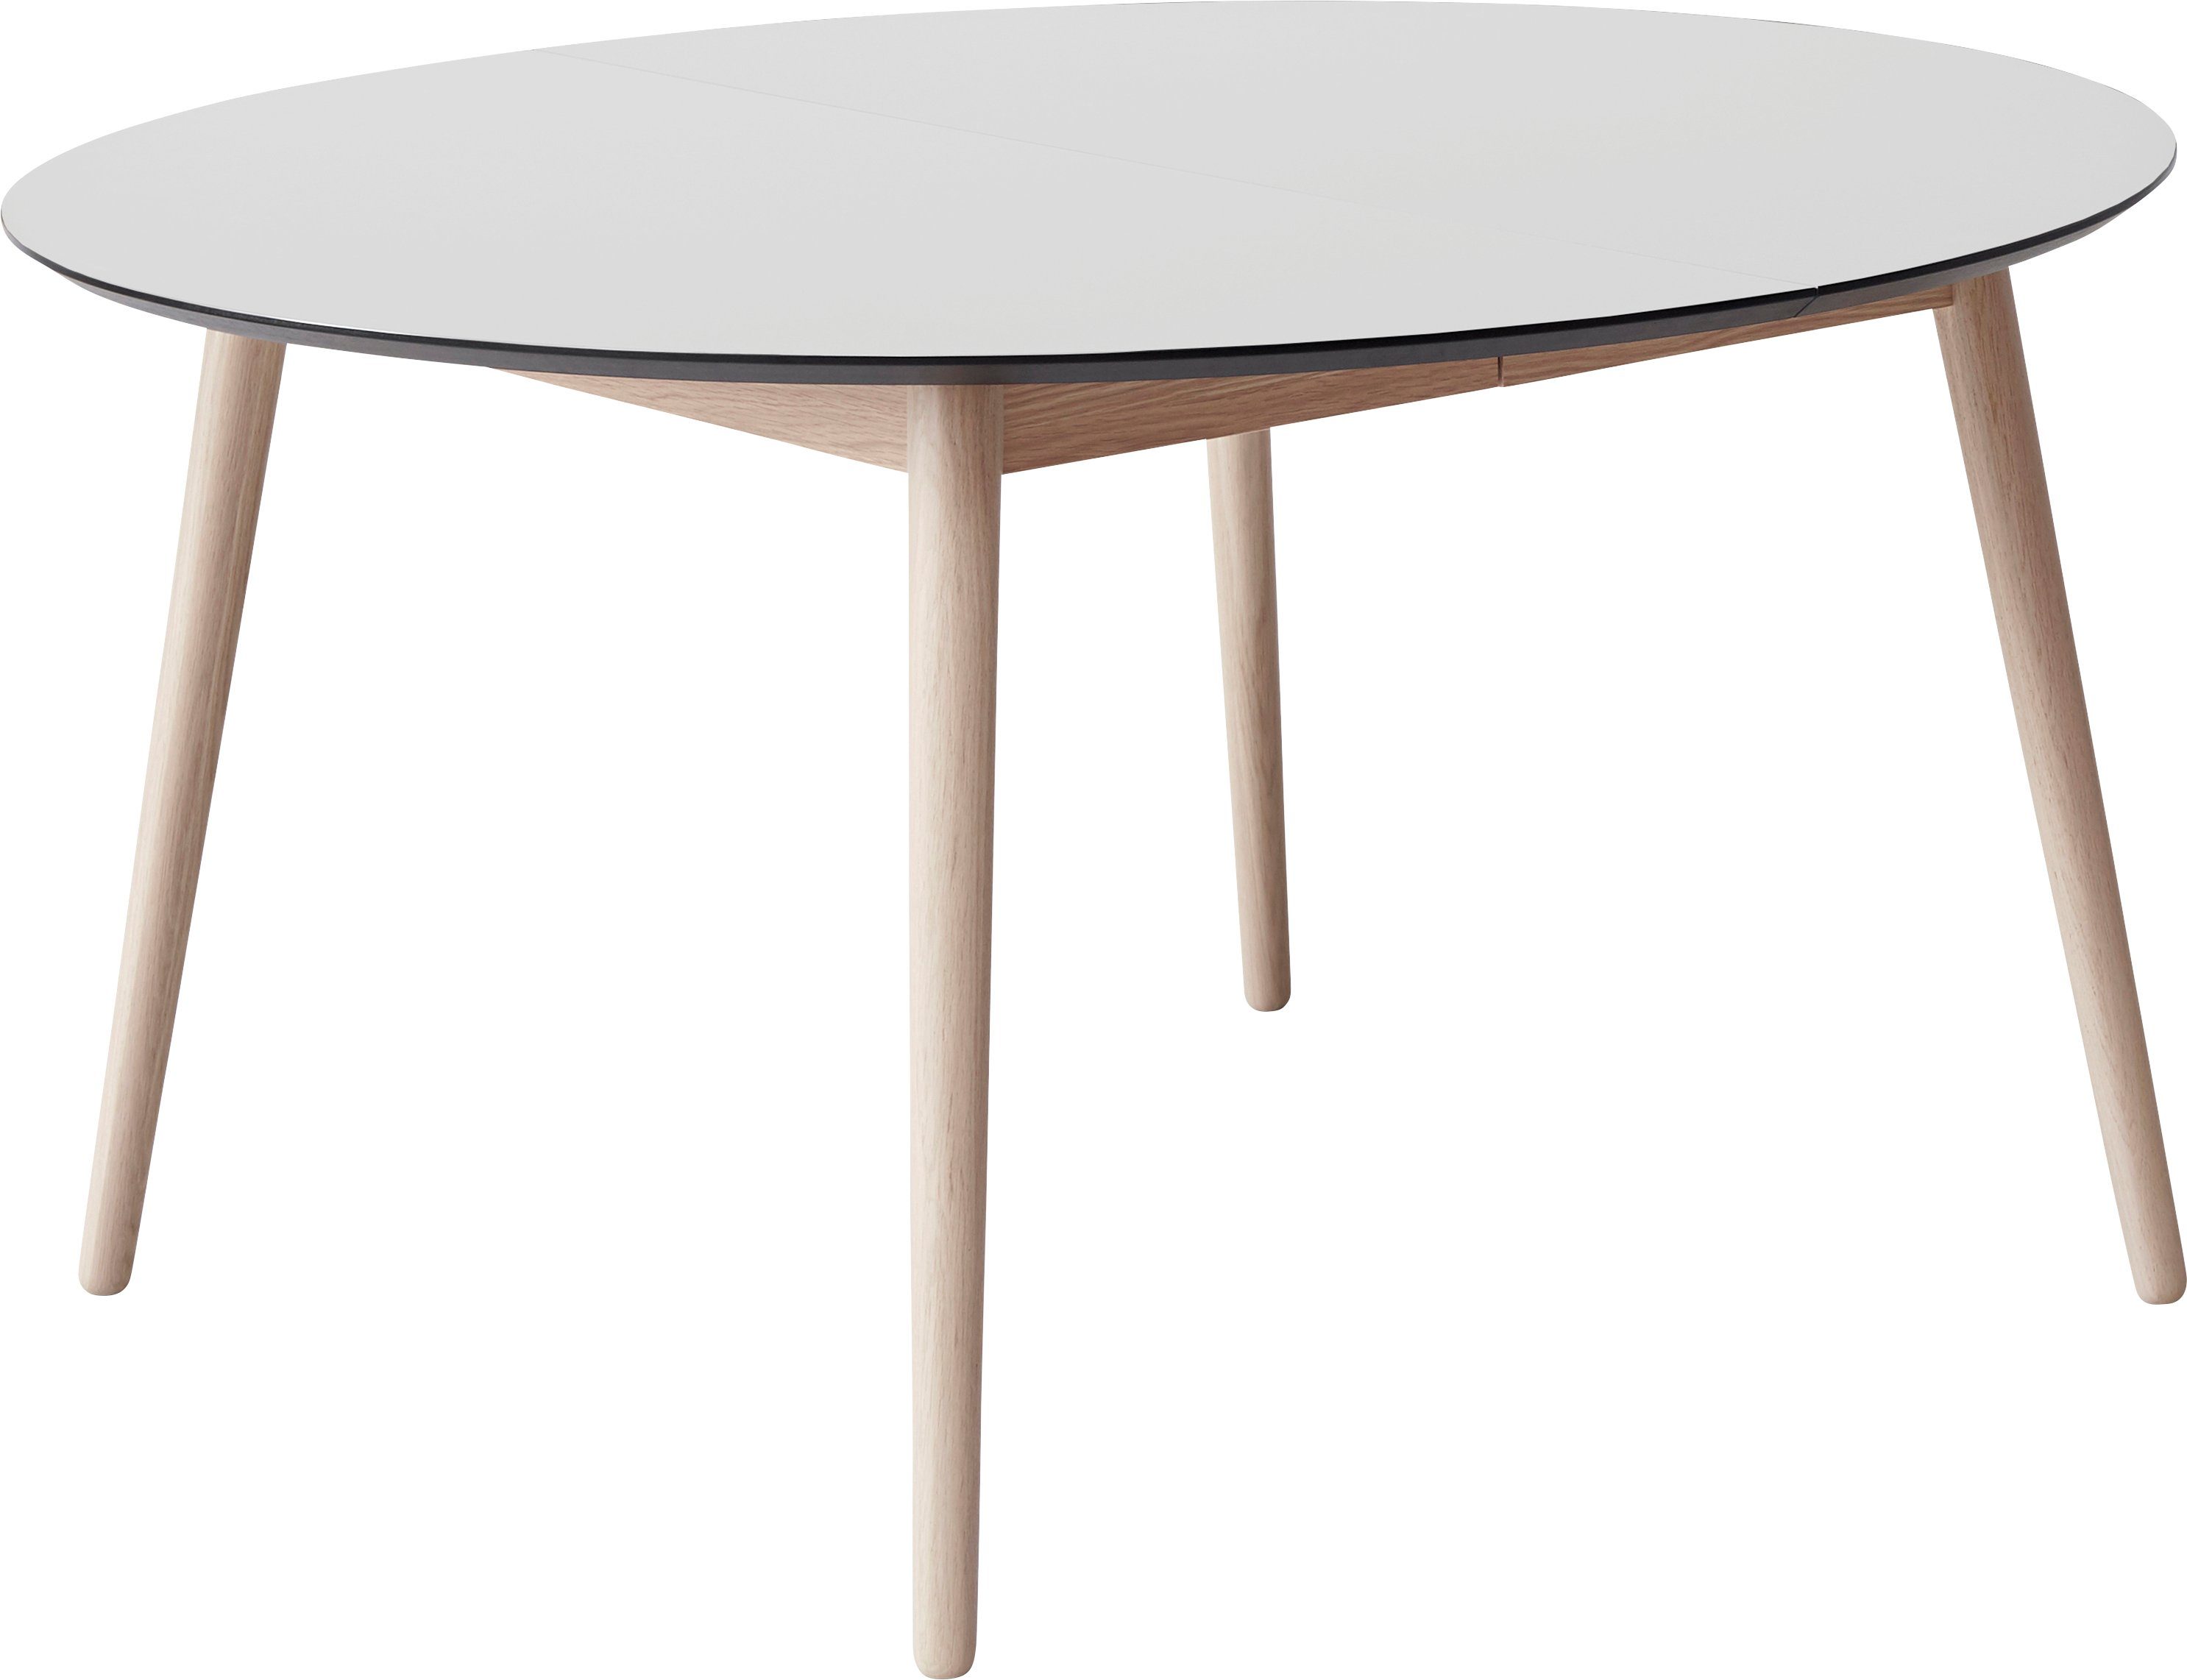 Hammel Furniture Esstisch Meza by Hammel, Ø135(231) cm, runde Tischplatte aus MDF/Laminat, Massivholzgestell Weiß | Esstische